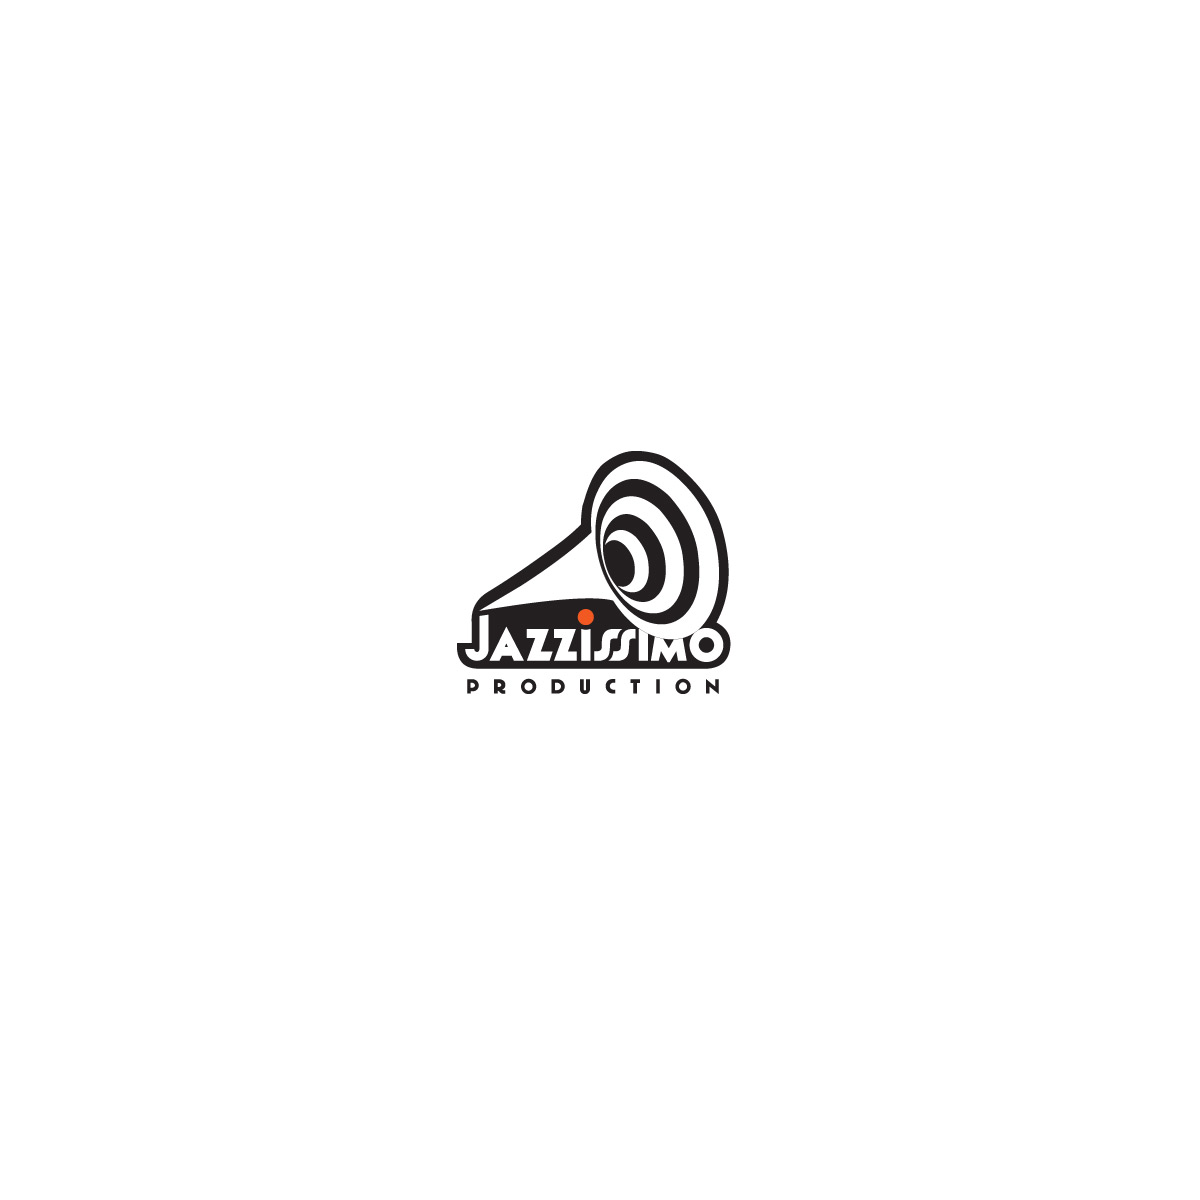 bomsky - graphisme - logo pour la société de production Jazzissimo